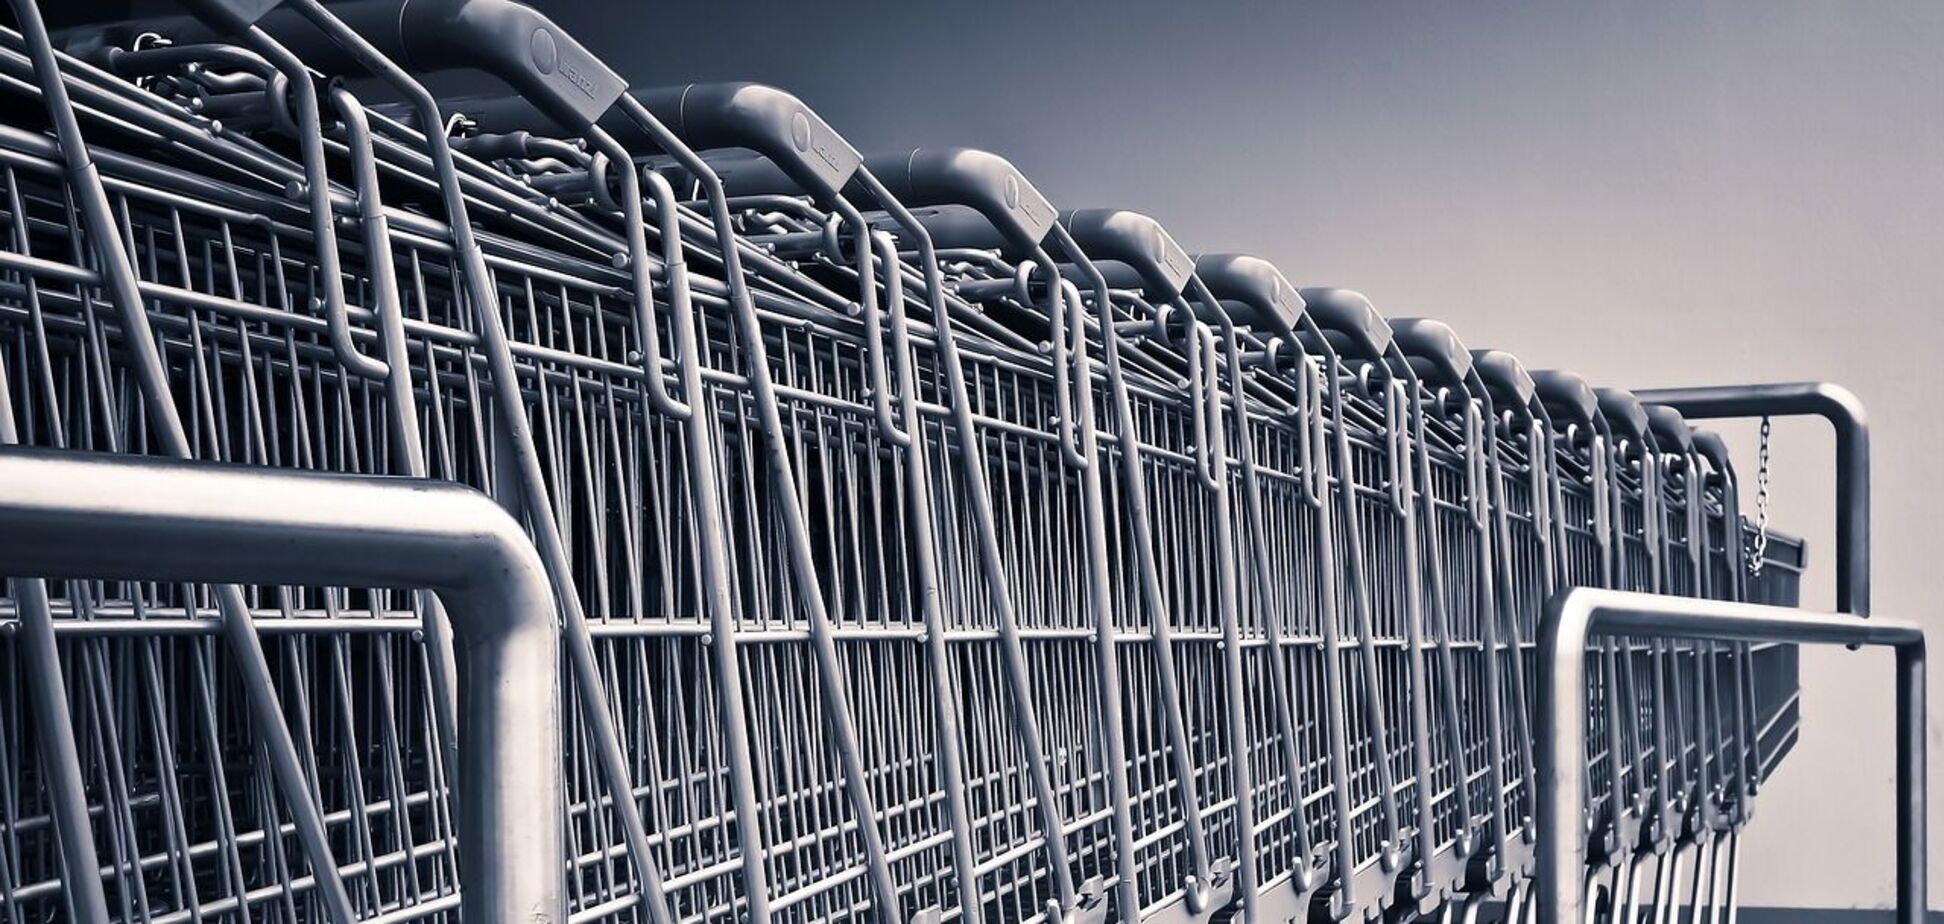 Охоронці у супермаркетах порушують права українців